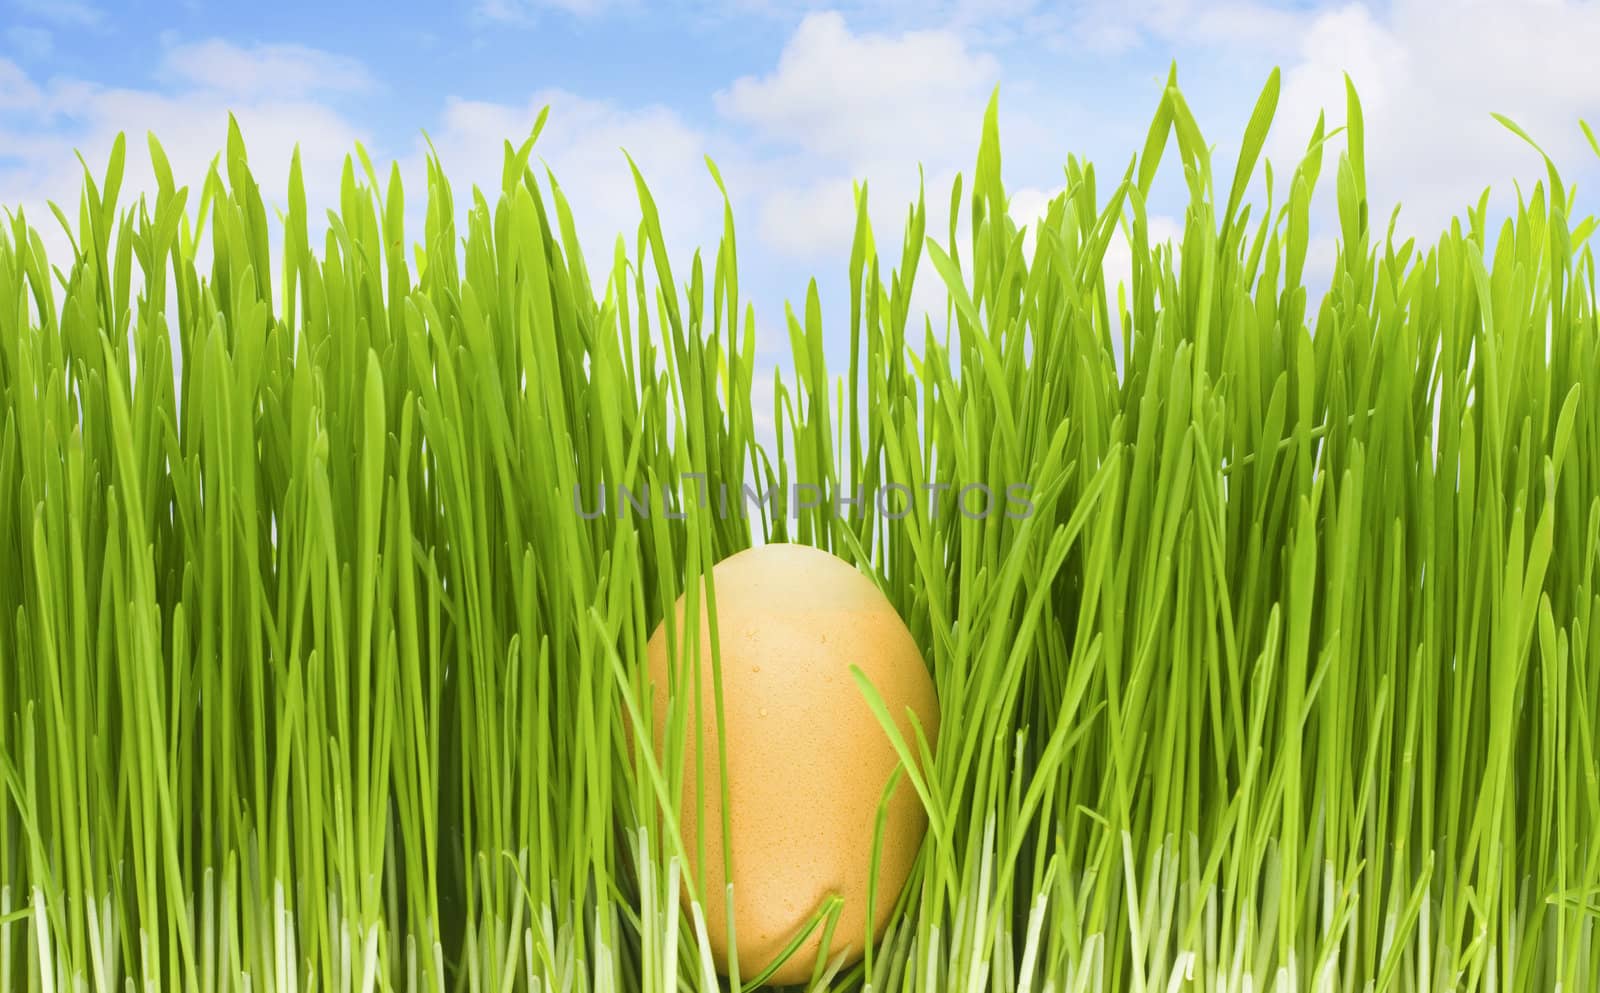 egg in grass, blue sky